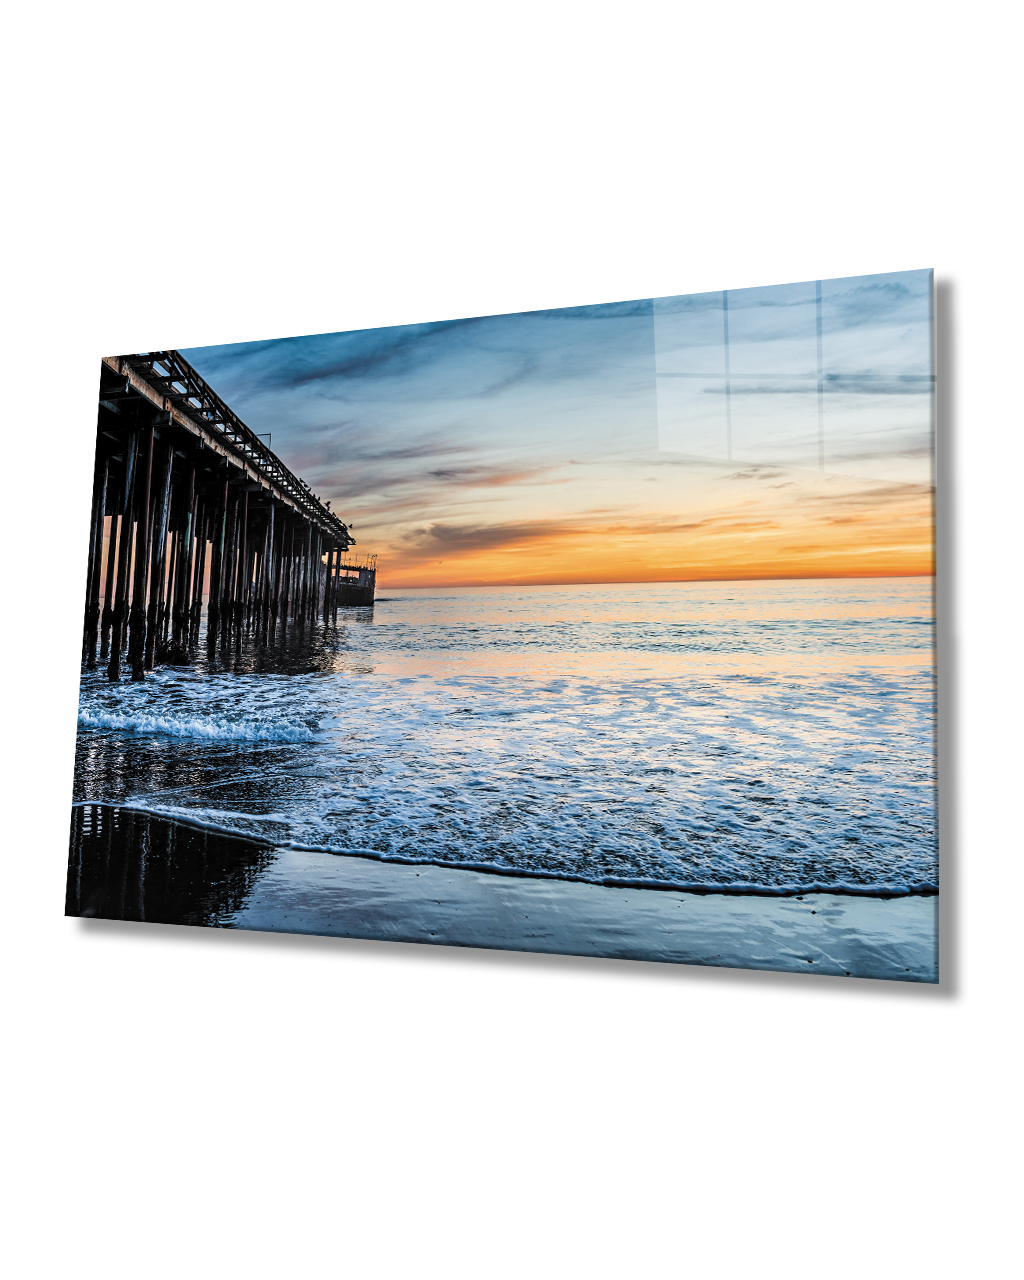 Gün Batımı Cam Tablo  4mm Dayanıklı Temperli Cam Sunset Glass Table 4mm Durable Tempered Glass